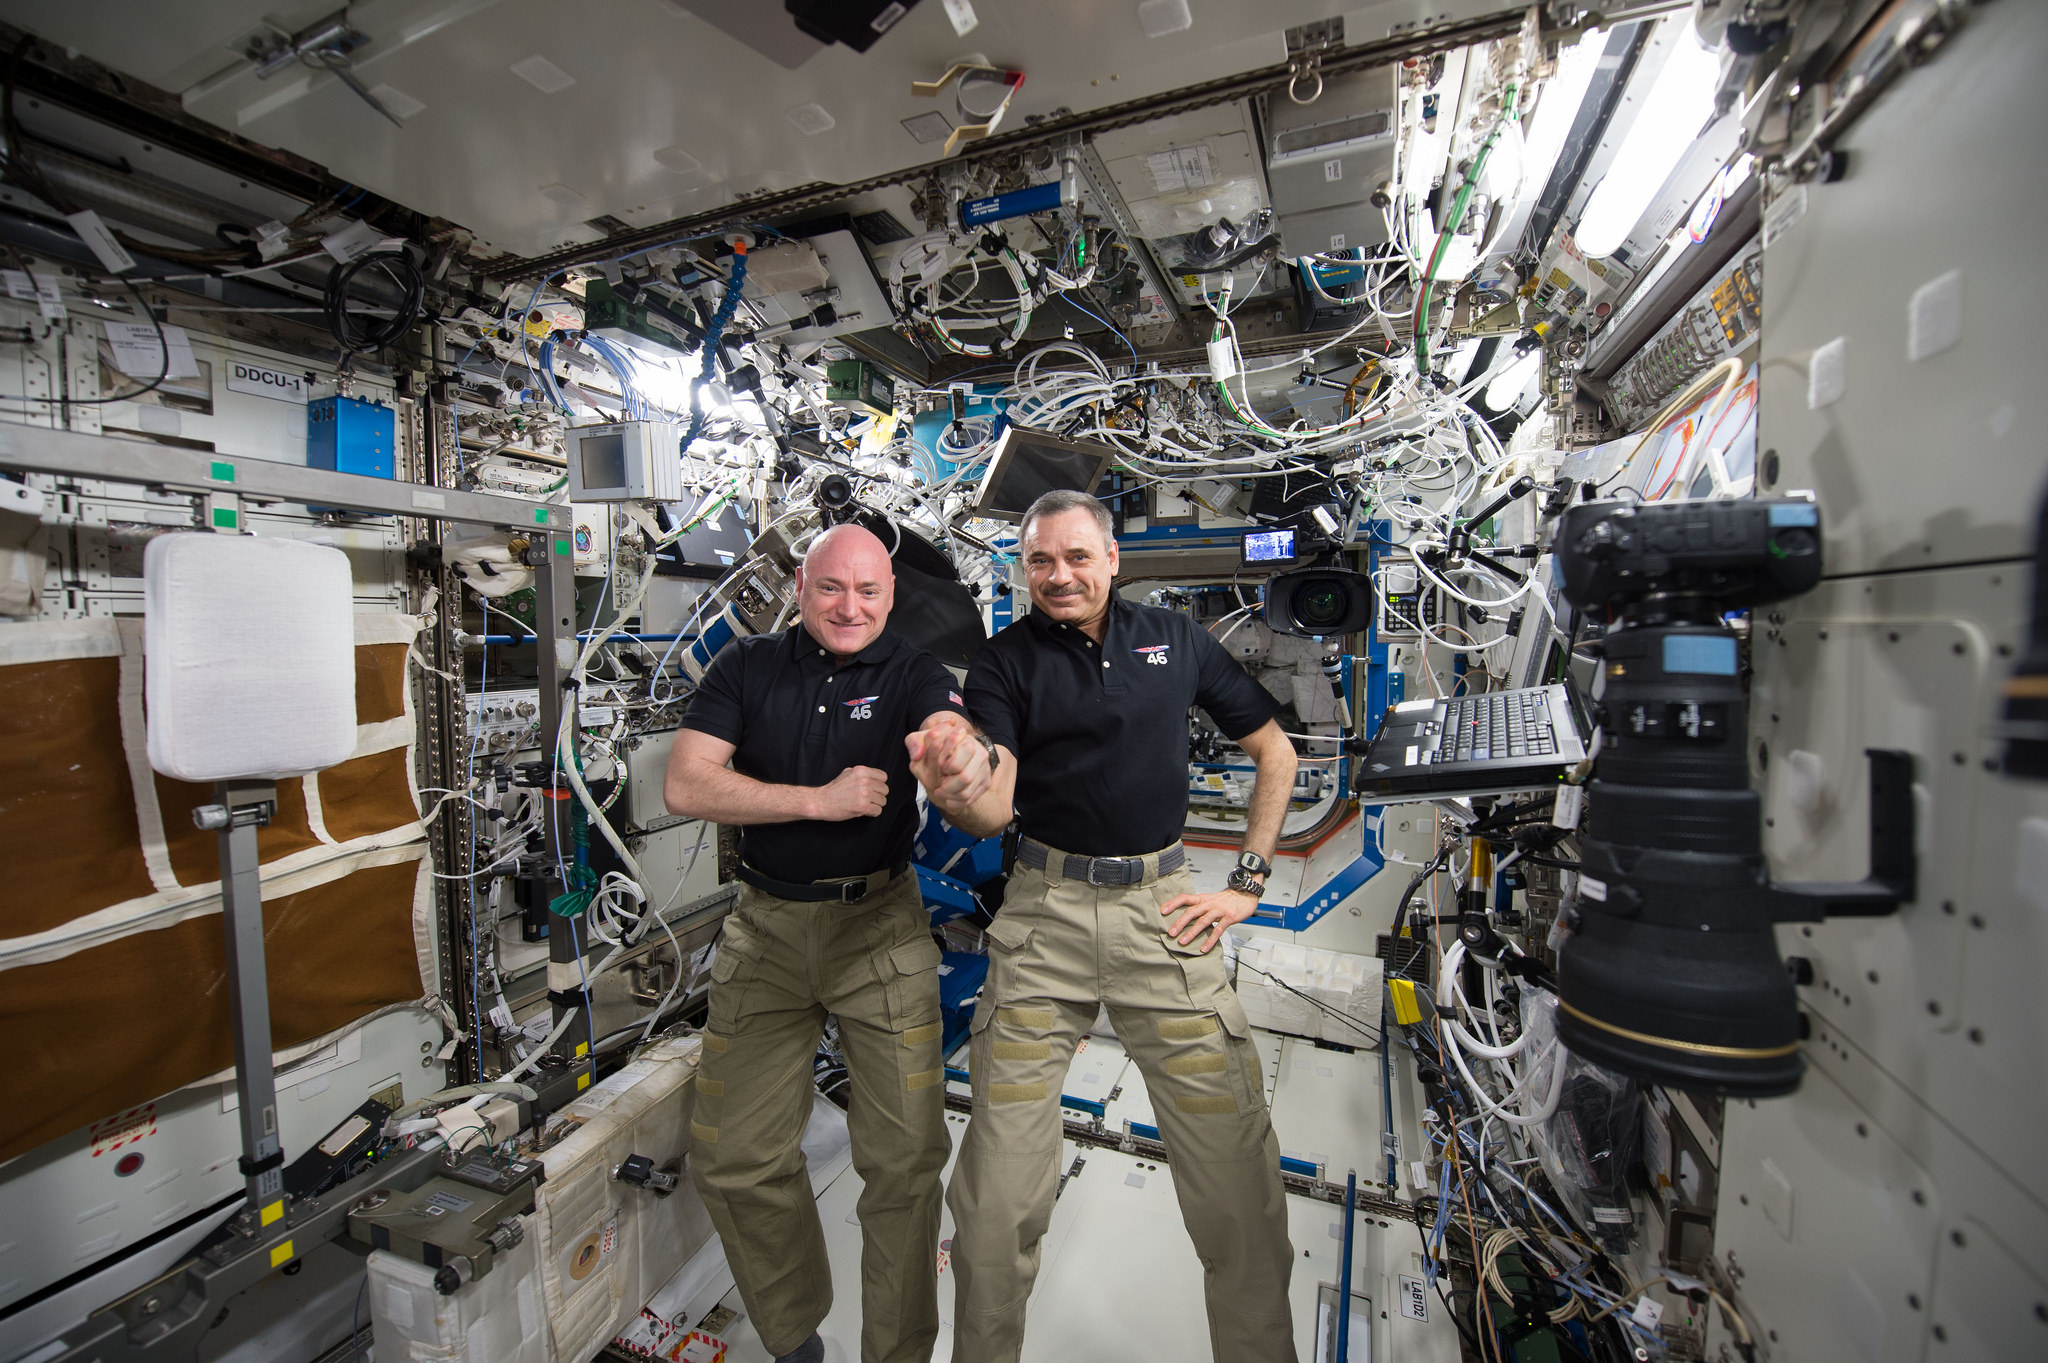 ASA astronaut Scott Kelly and Russian cosmonaut Mikhail Kornienko